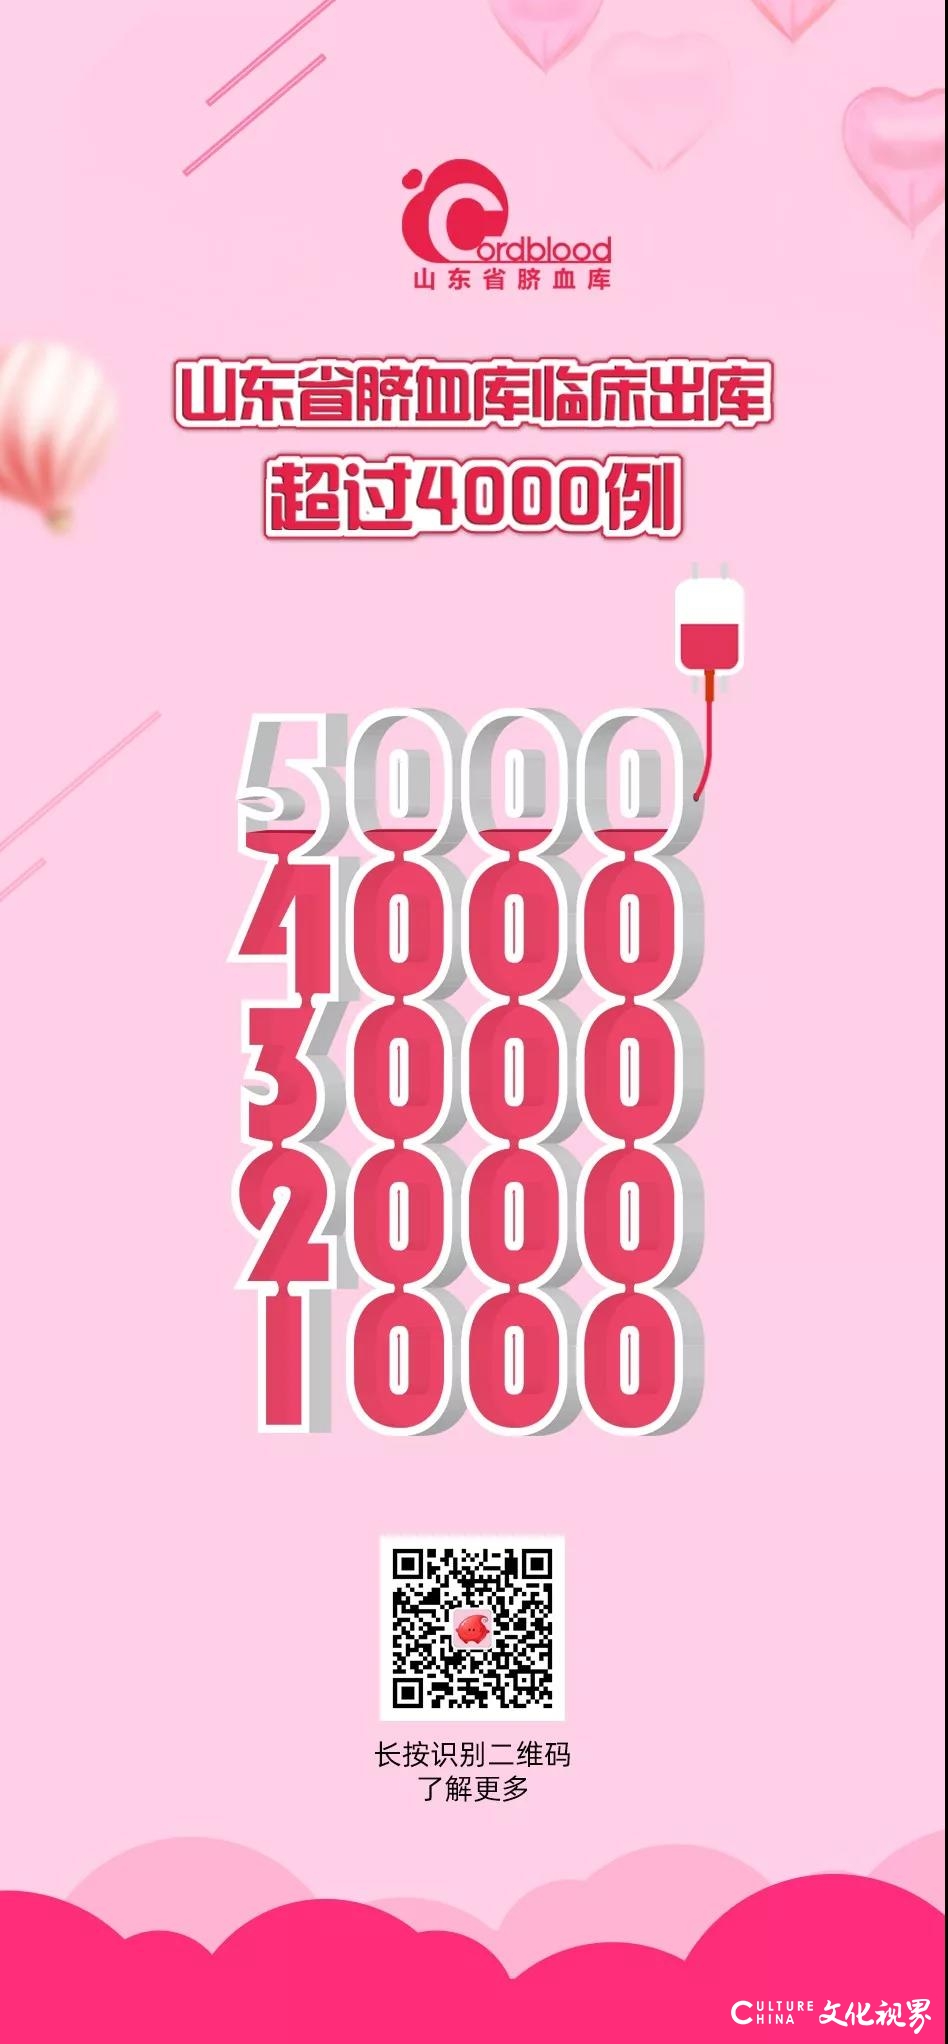 山东省脐血库2019年共出库脐带血1644例，累计已超4000例